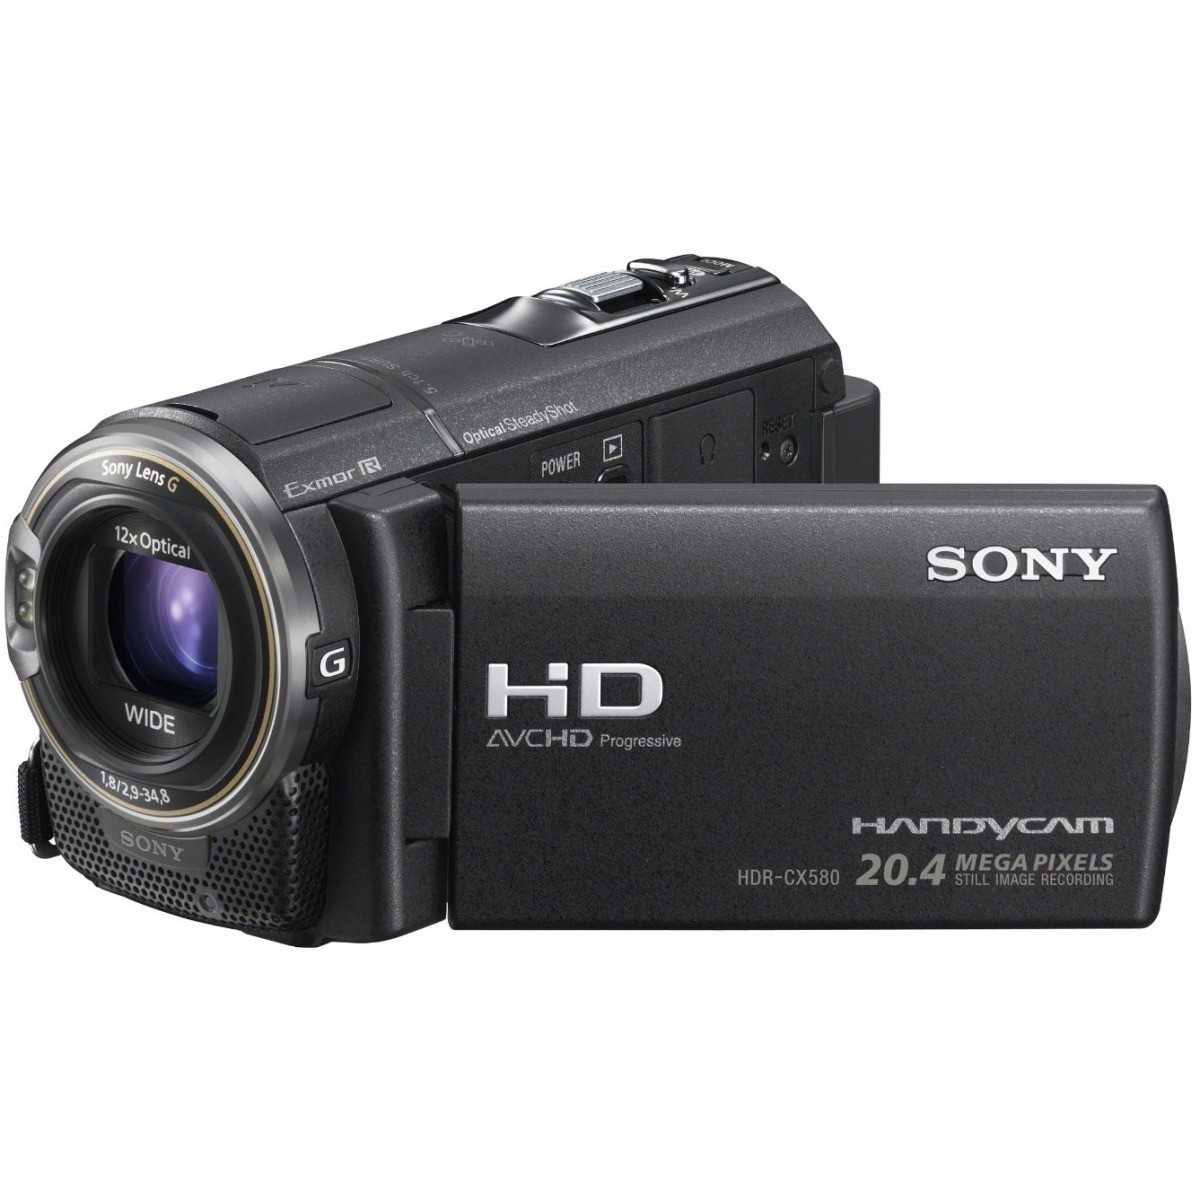 Видеокамера sony handycam hdr-cx200e — купить, цена и характеристики, отзывы